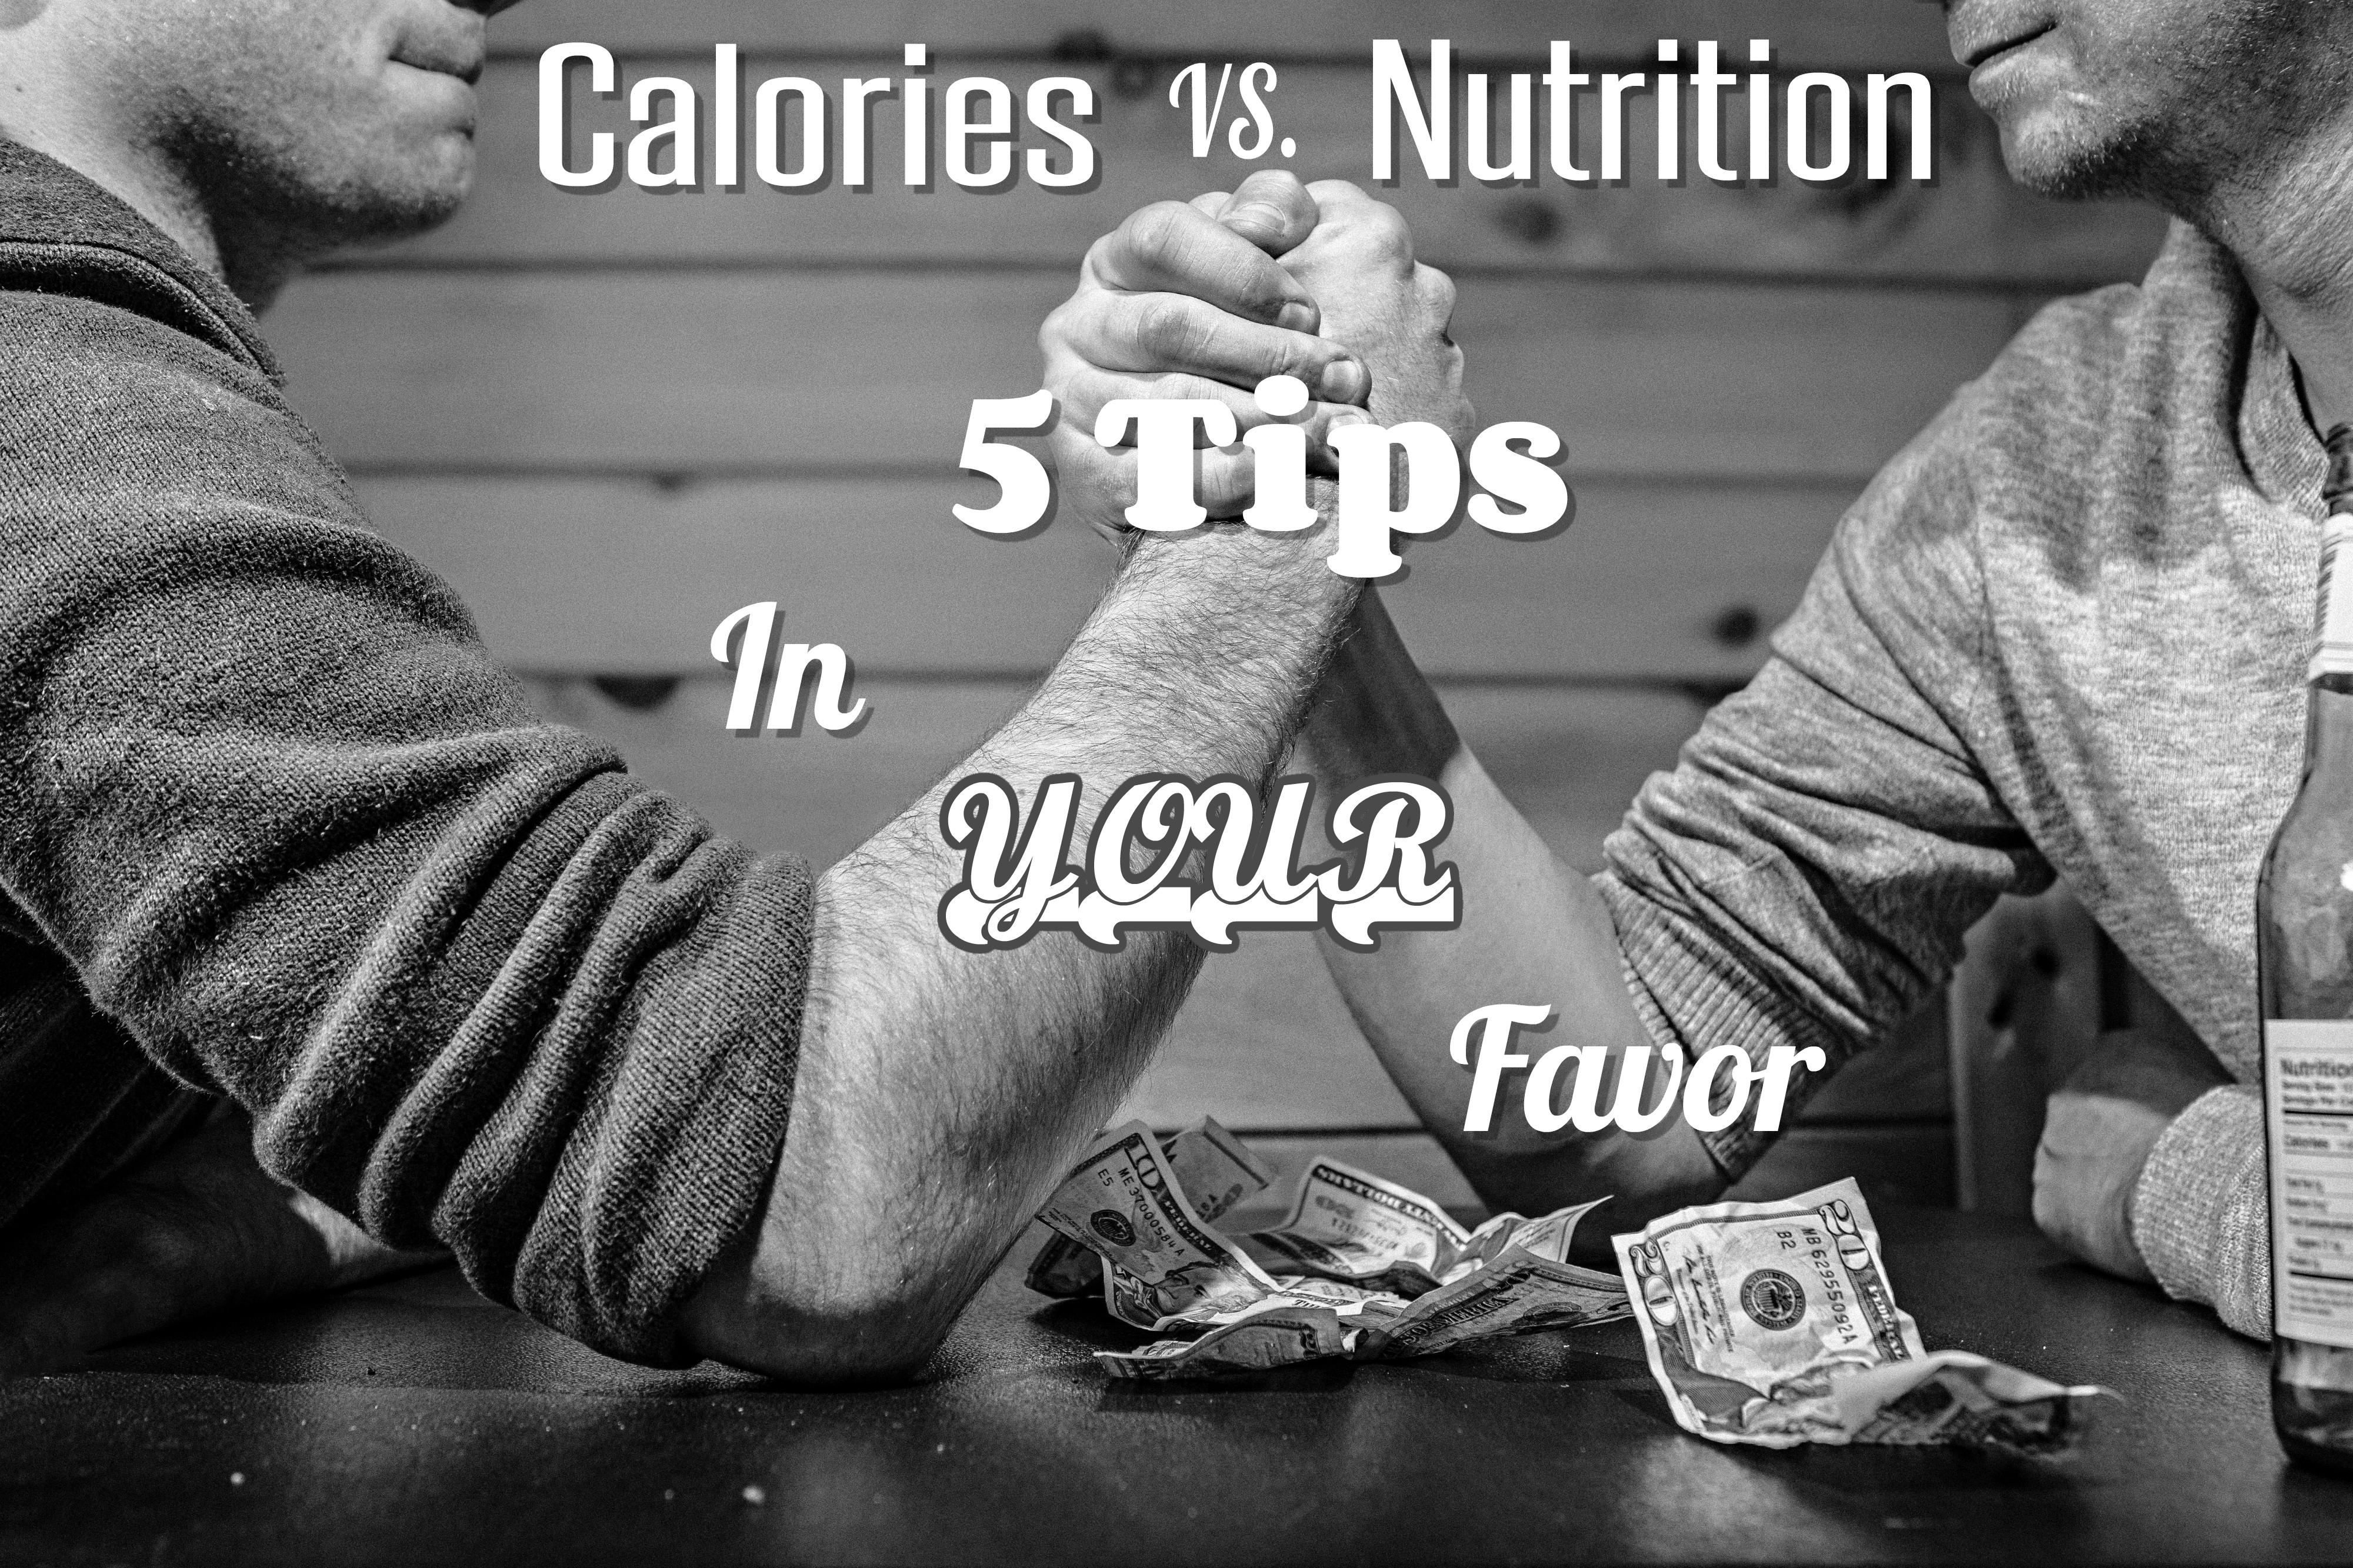 Calories vs. Nutrition